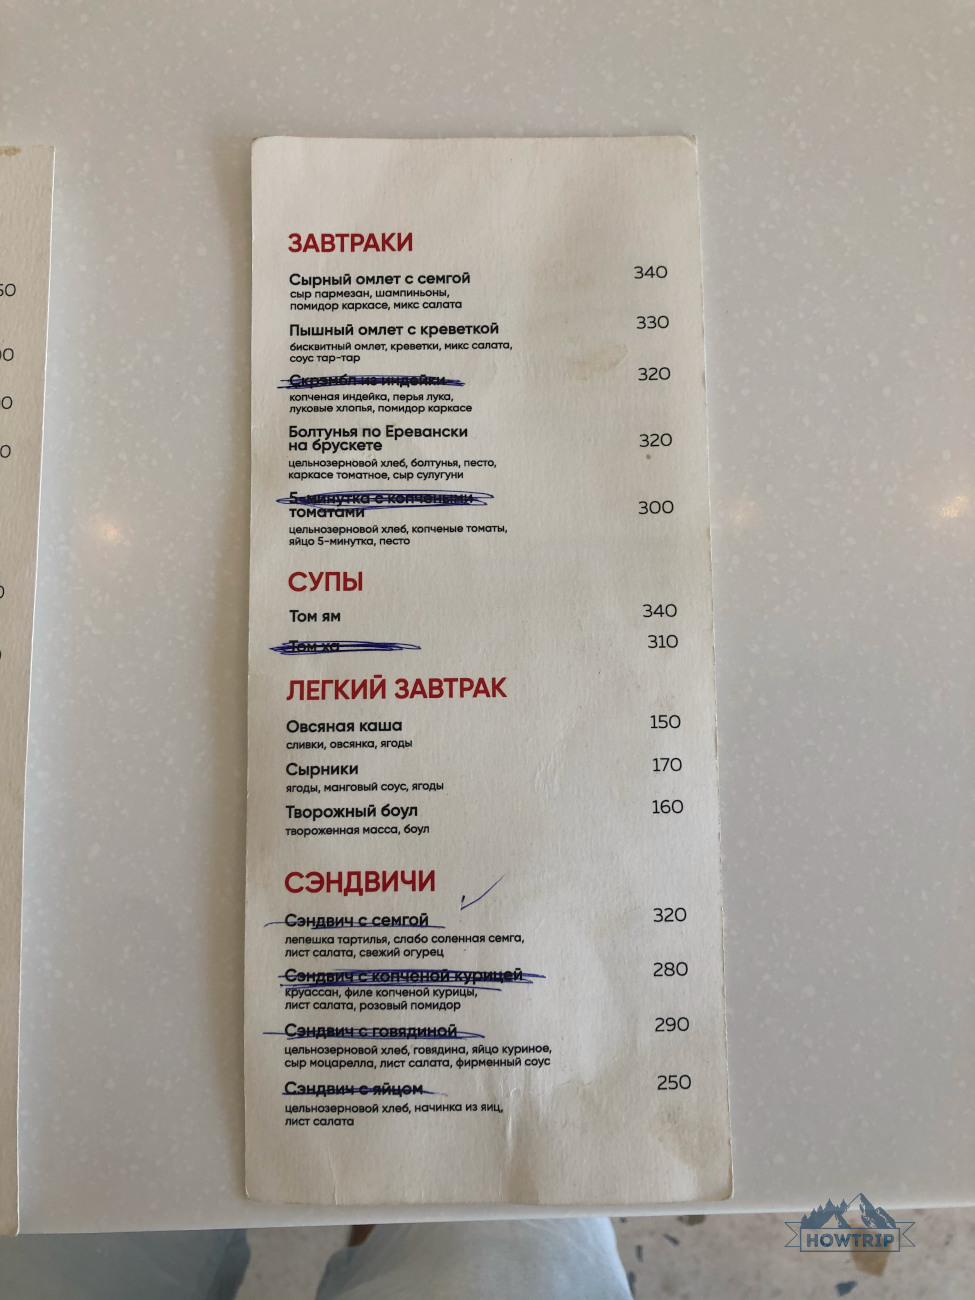 Цены на меню в кафе